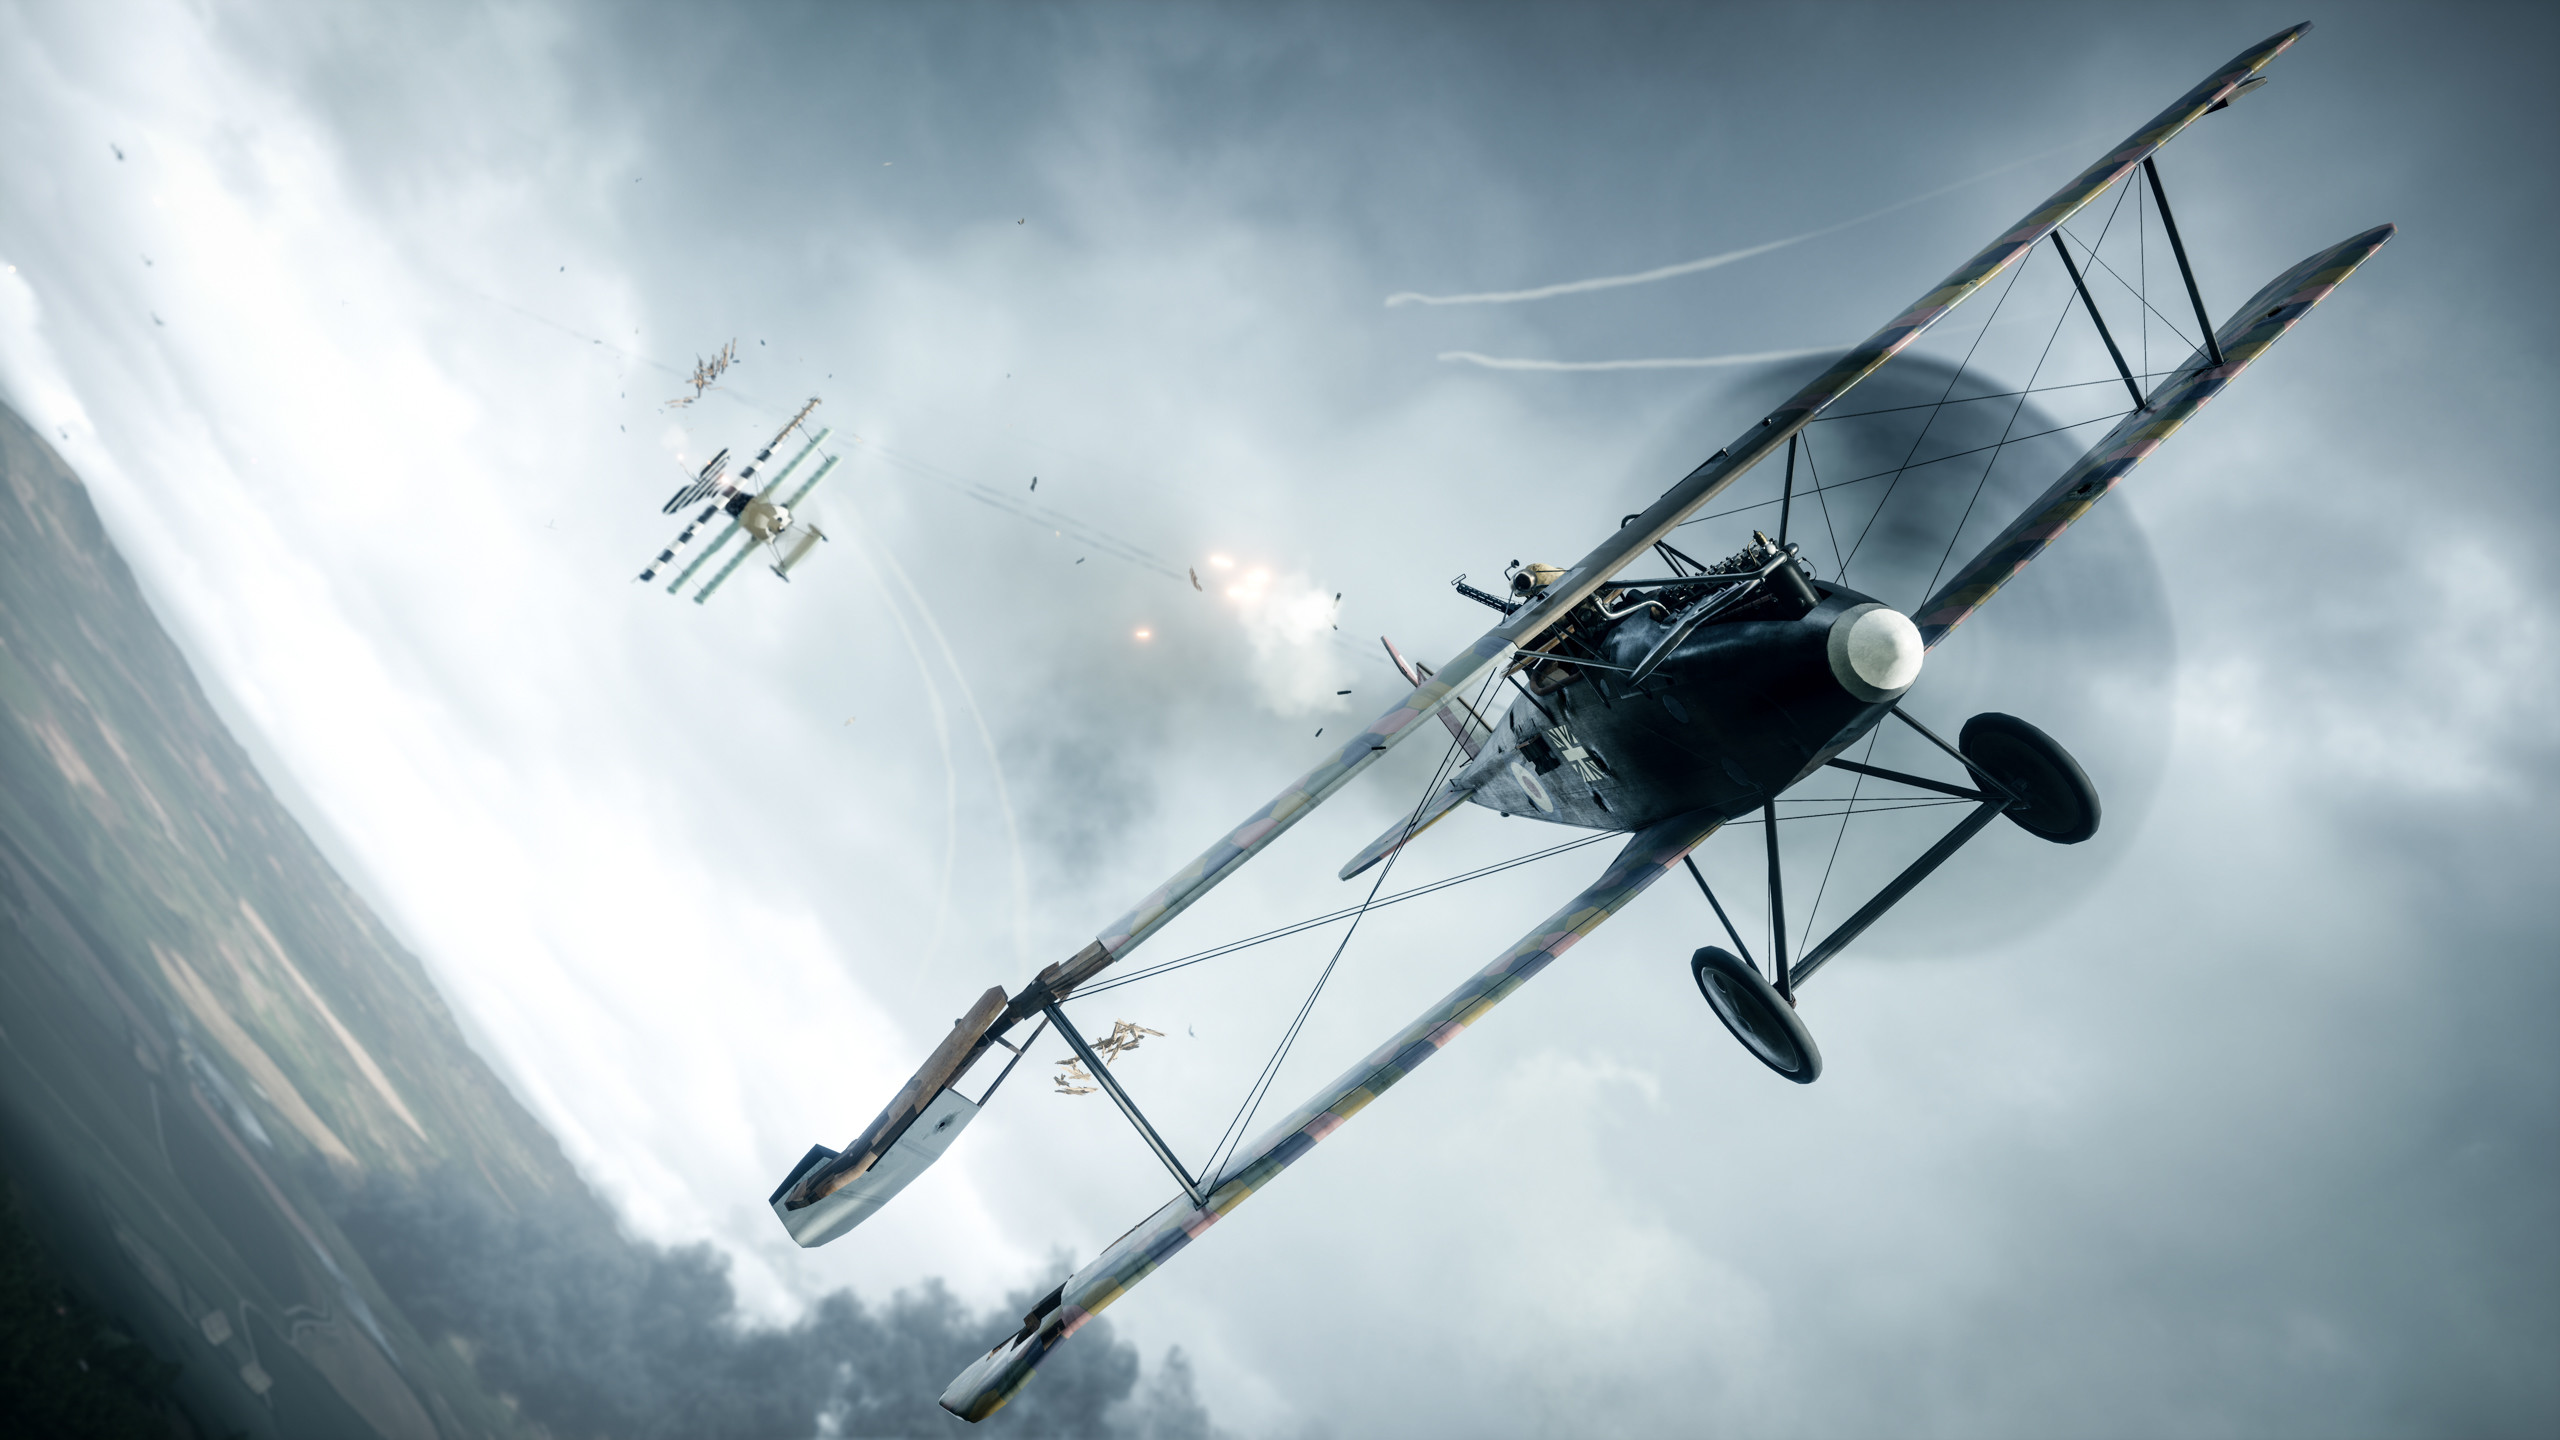 2560x1440 Computerspiele - Battlefield 1 Flugzeug Biplane Wallpaper